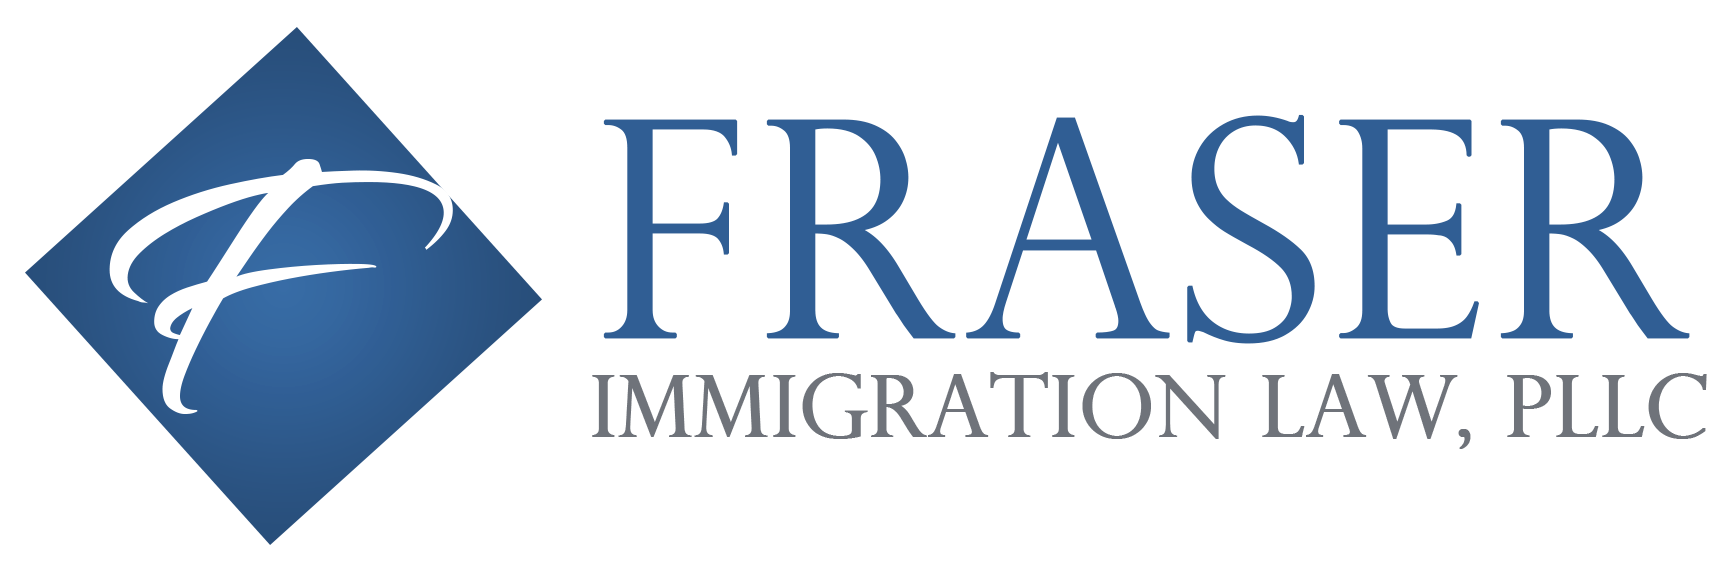 Fraserpllc | EB-1 O-1 EB-2 NIW Immigration Law Firm